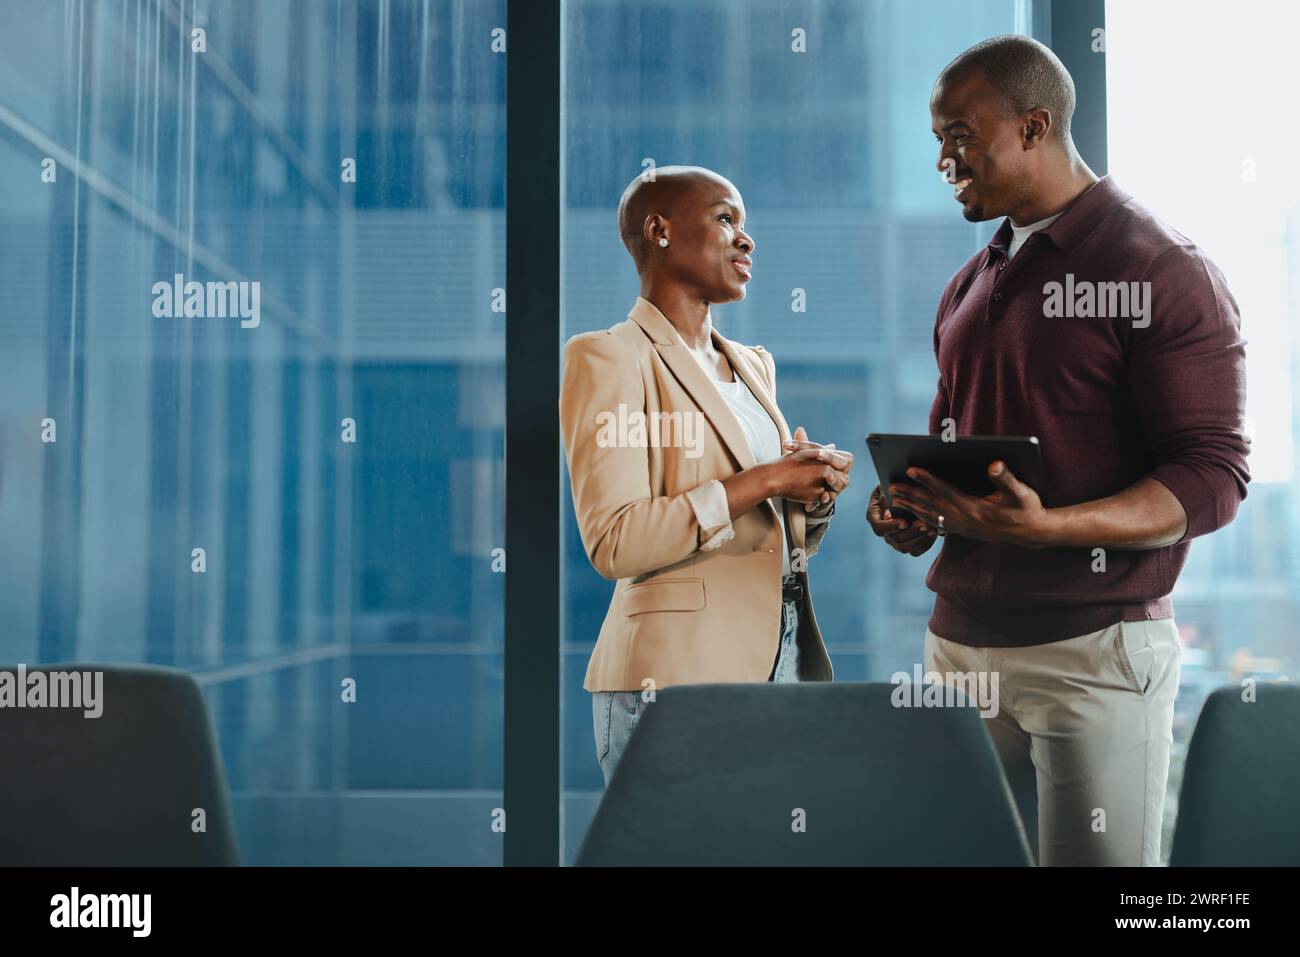 Riunioni aziendali di successo in una sala riunioni aziendale. Un uomo e una donna discutono di idee, usando un tablet. Il loro lavoro di squadra e i loro volti sorridenti ne sono un esempio Foto Stock